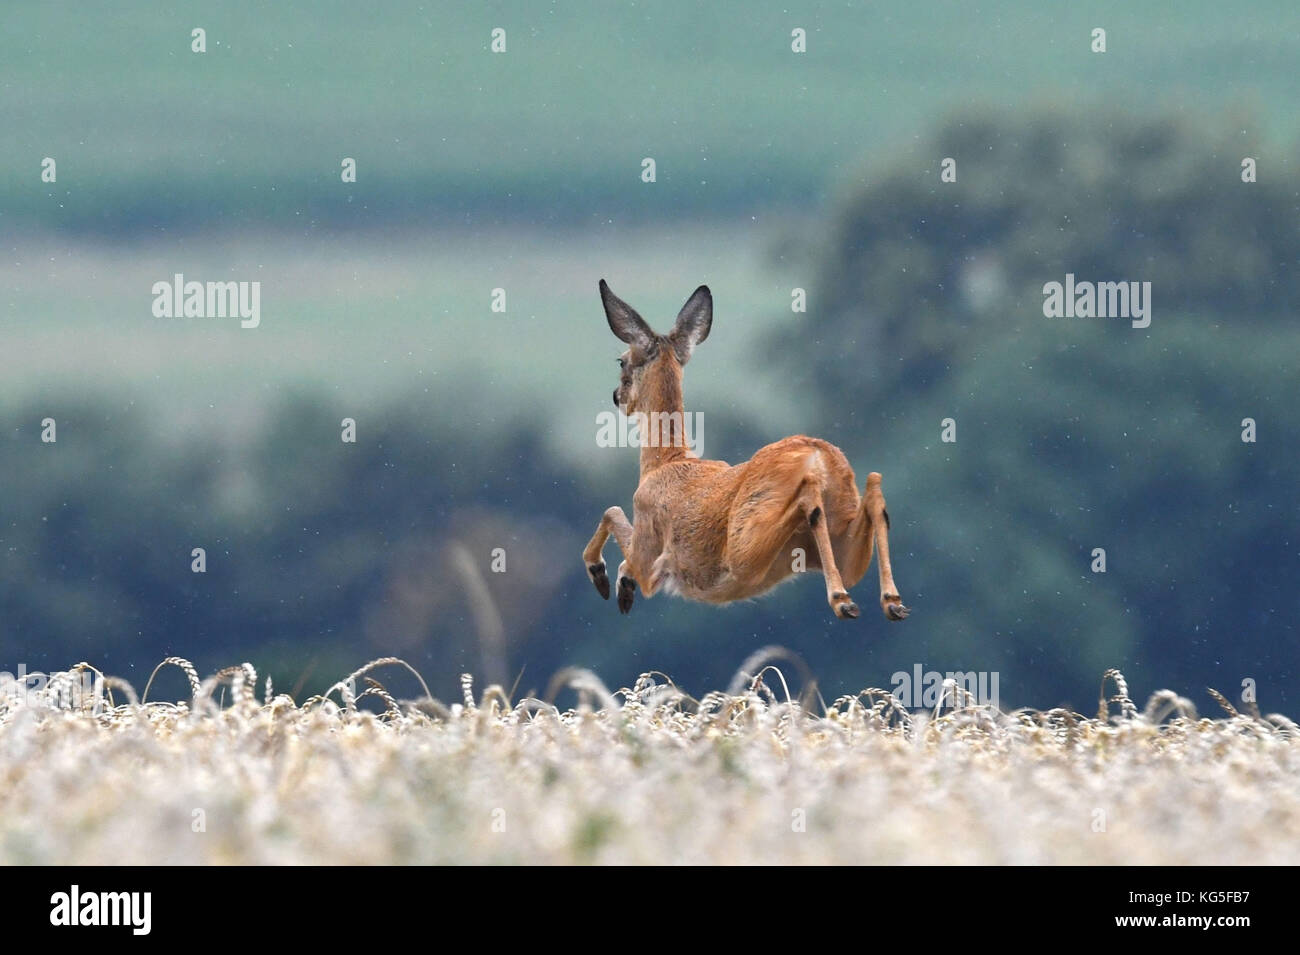 Field, deer, roe deer, Capreolus capreolus, jump, Stock Photo